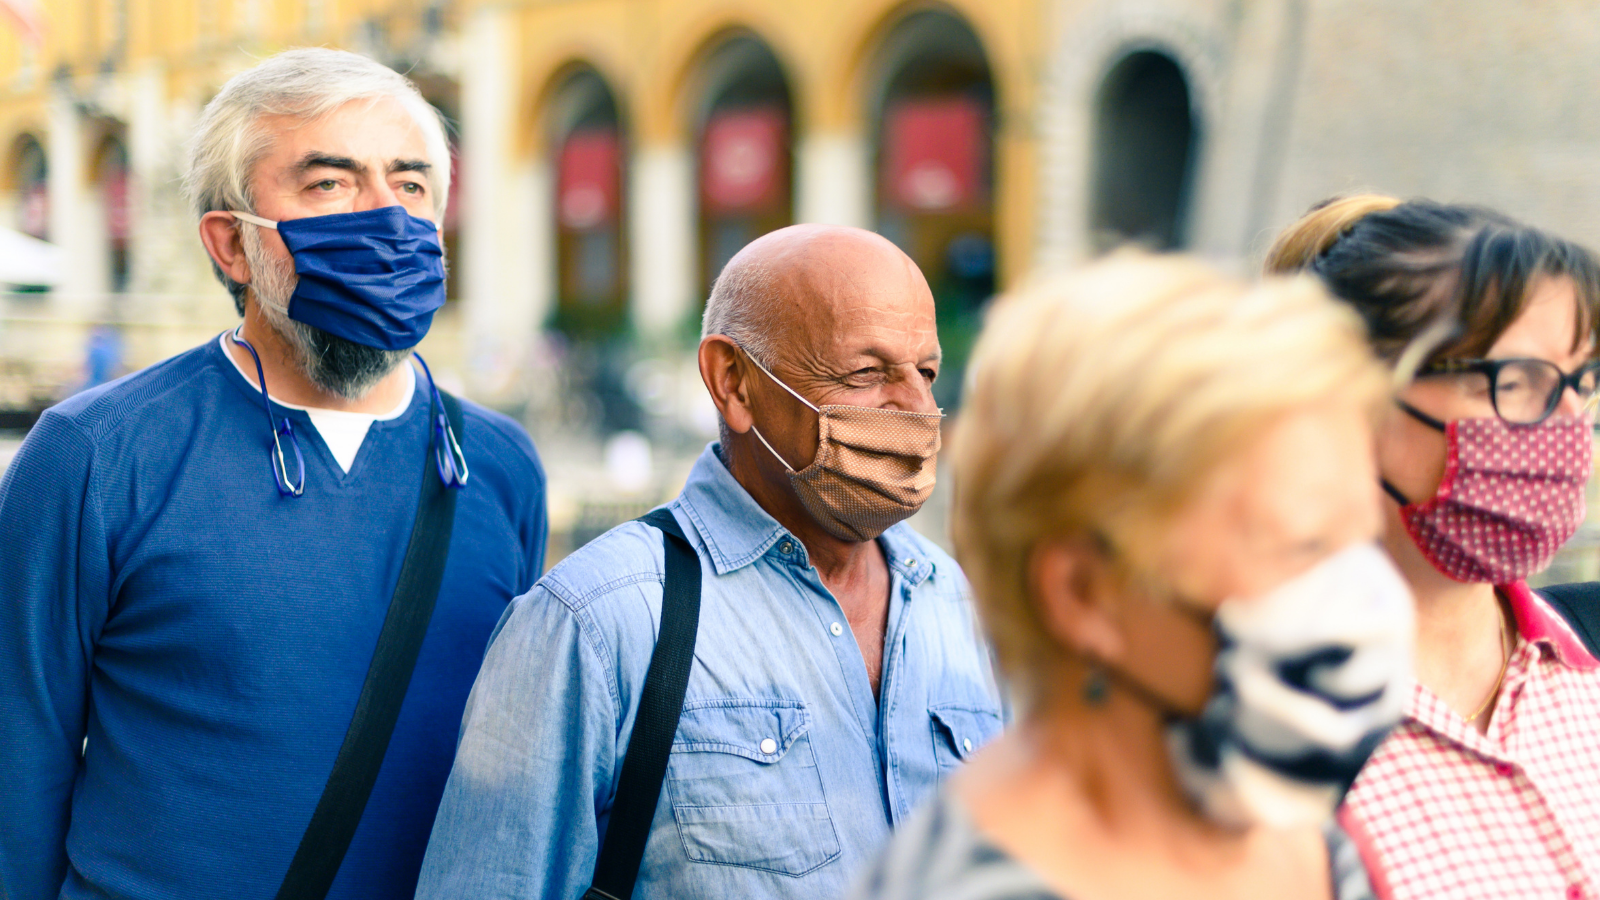 People wearing masks